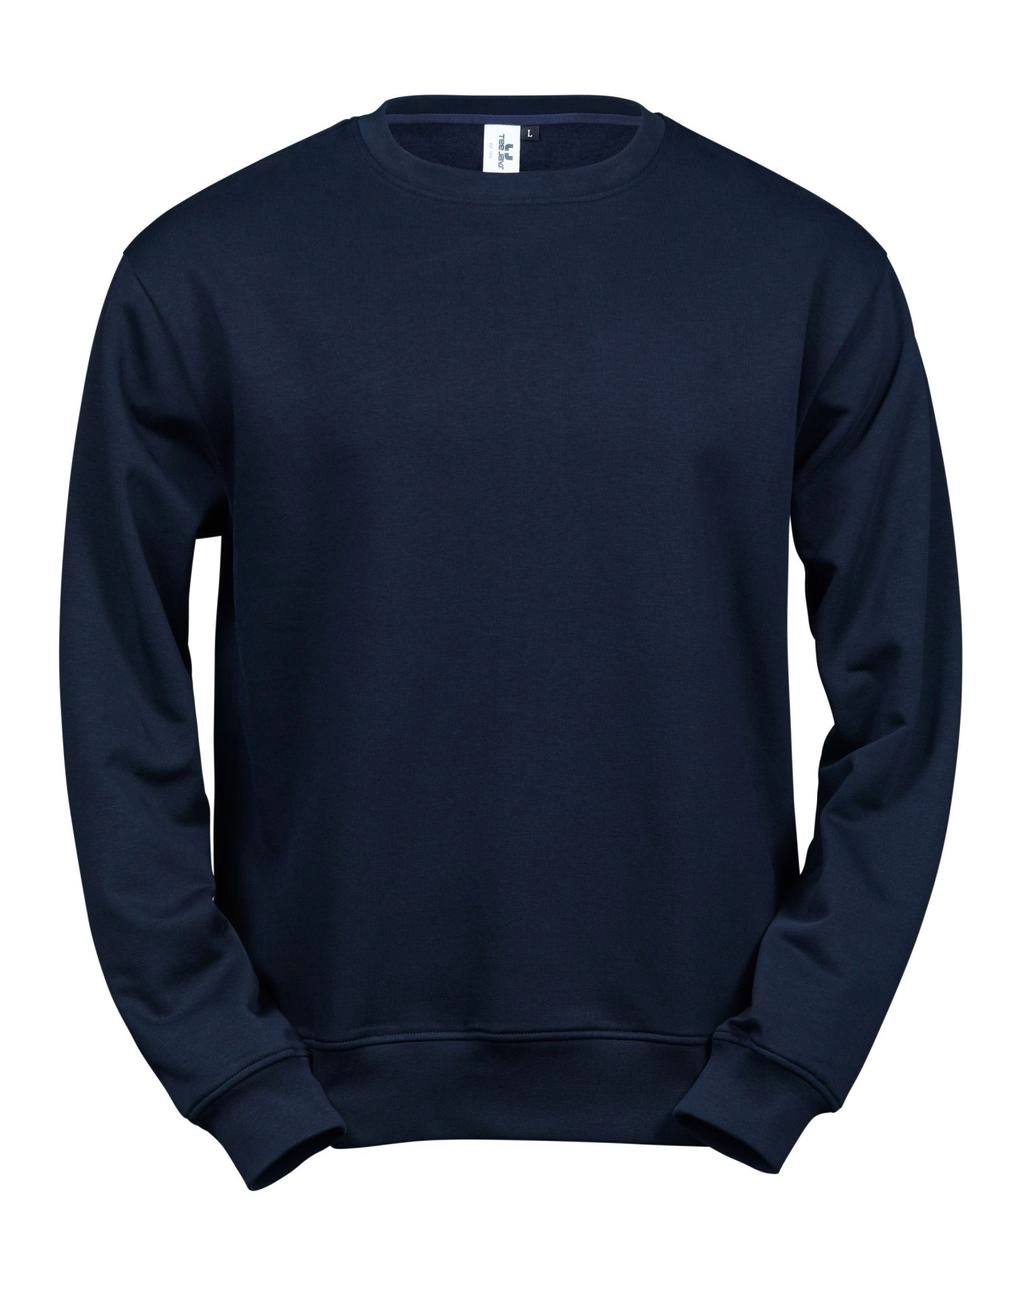 Power Sweatshirt zum Besticken und Bedrucken in der Farbe Navy mit Ihren Logo, Schriftzug oder Motiv.